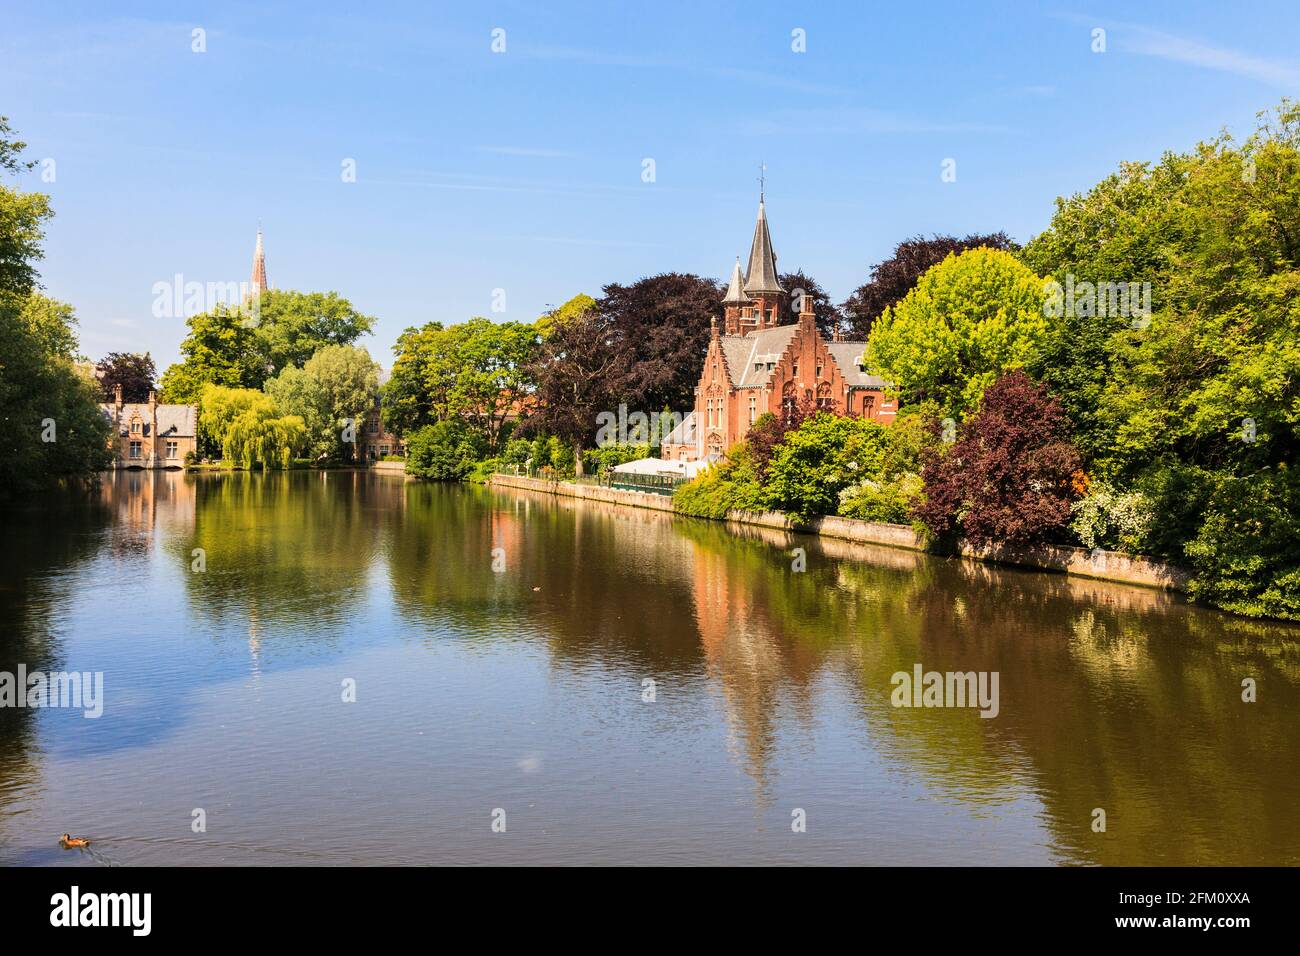 Vue sur le lac Minnewater, connu comme le lac de l'amour. Minnewater Park, Bruges, Flandre orientale, Belgique, Europe. Banque D'Images